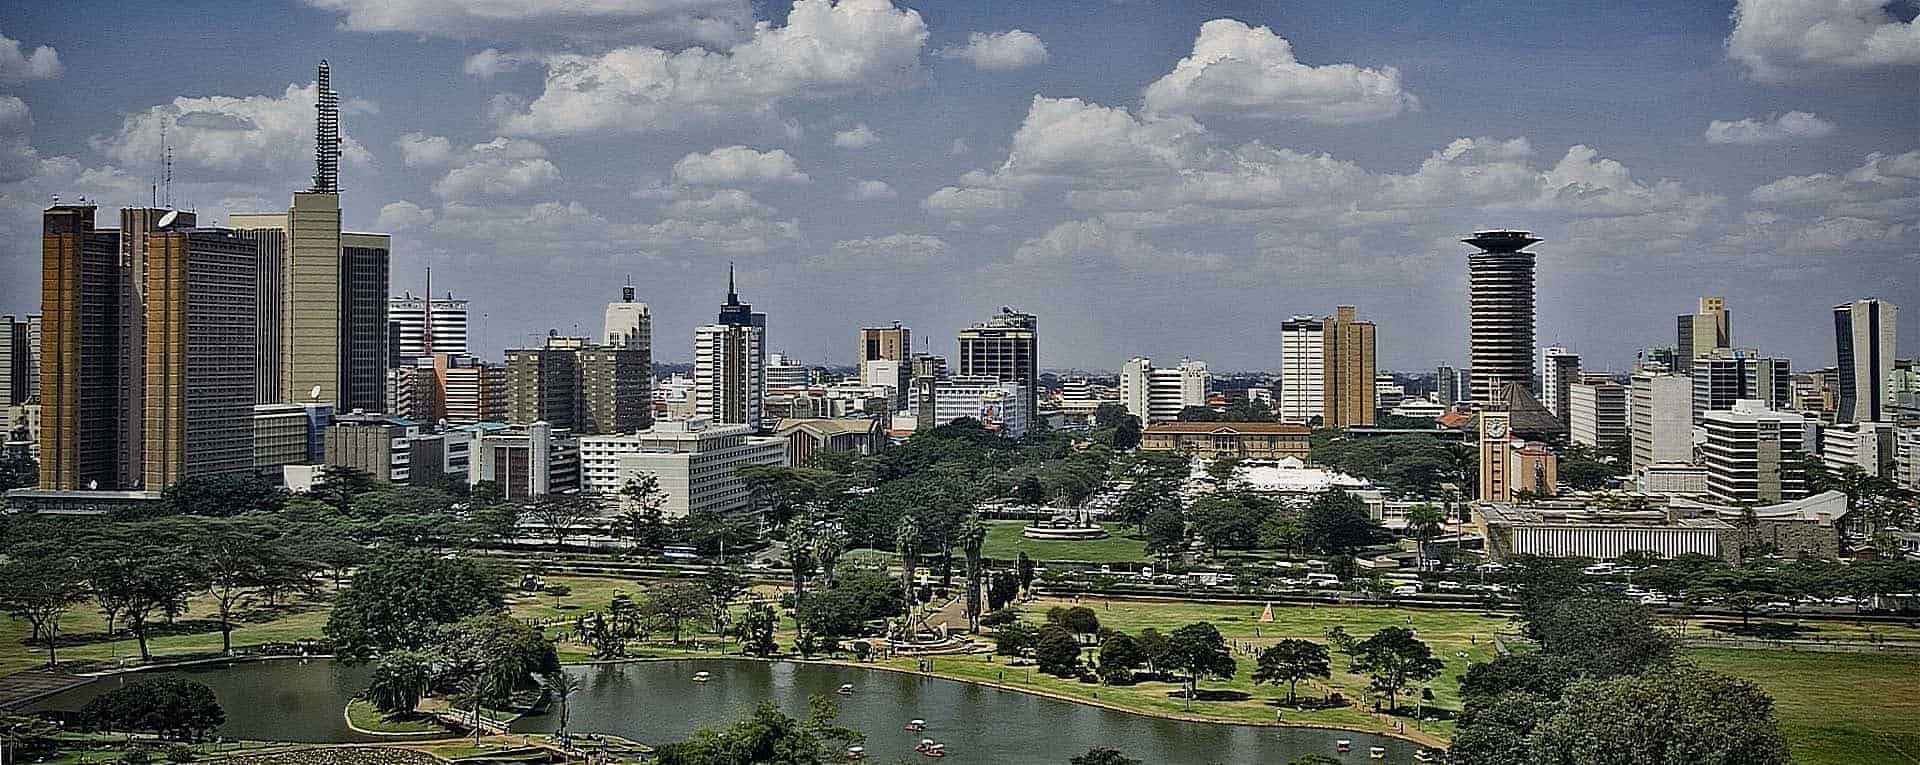 Image result for nairobi city